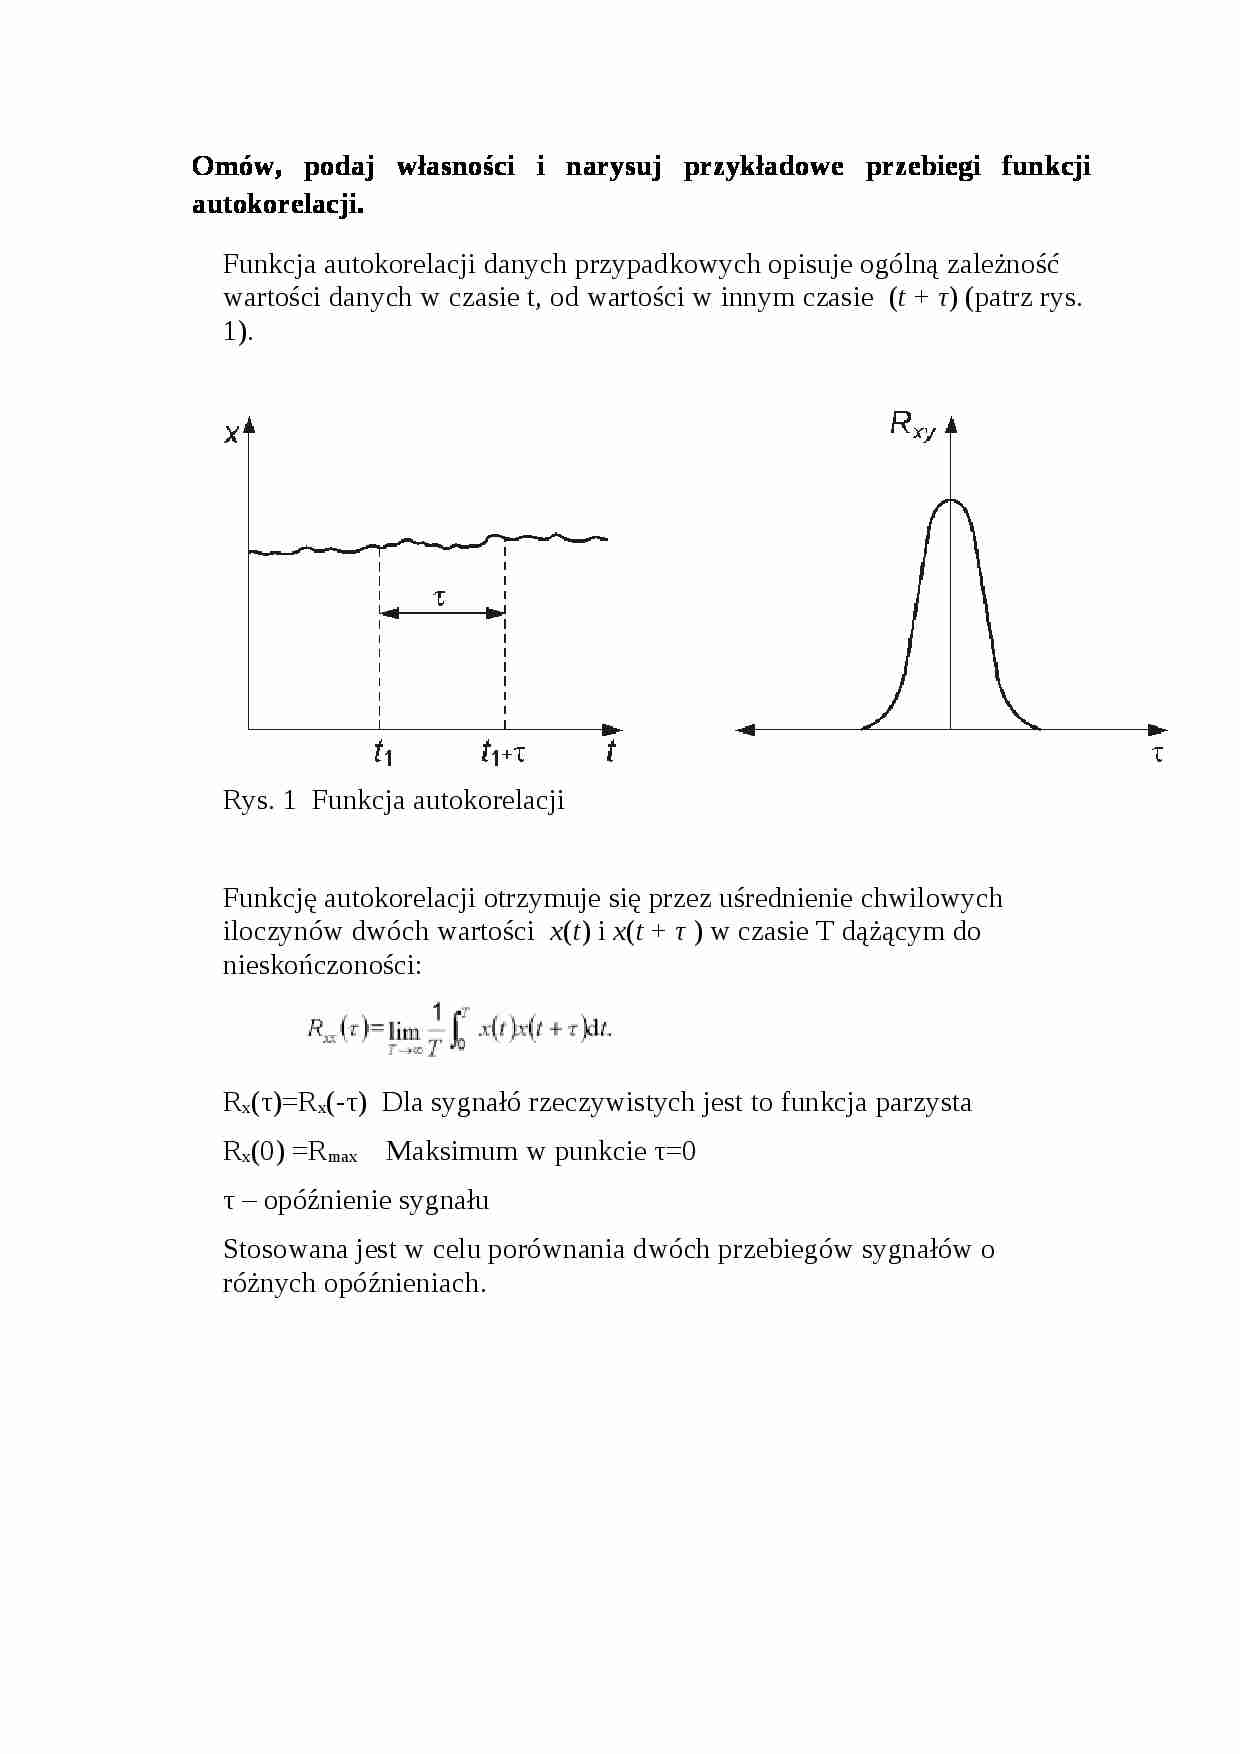 Przebiegi funkcji autokorelacji - strona 1